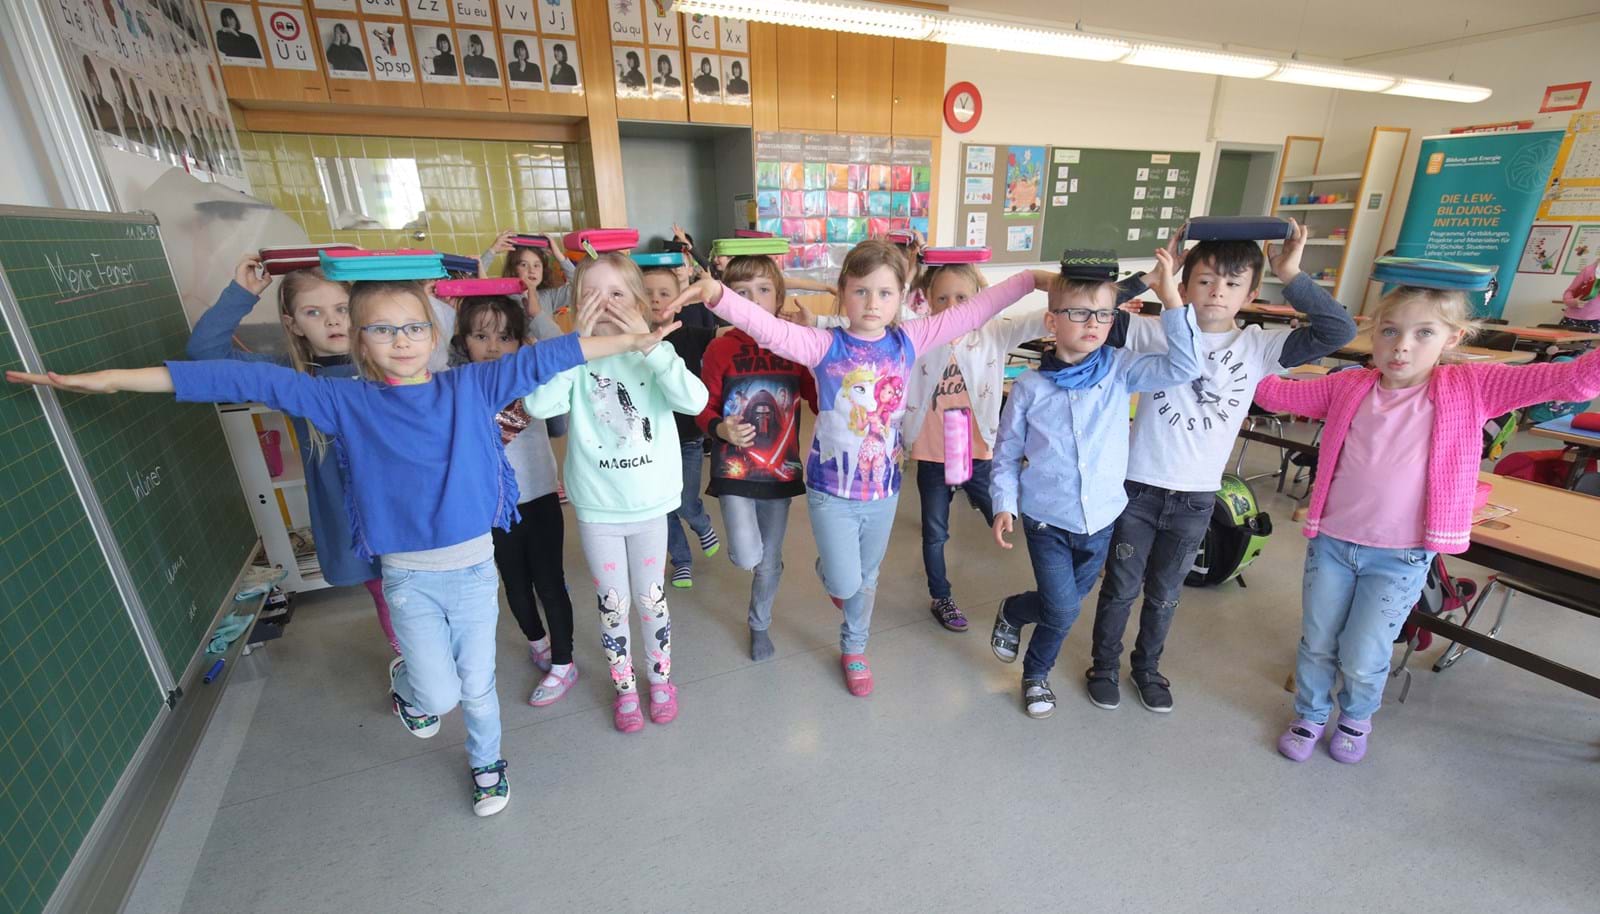 Die Schüler der Grundschule Gablingen freuen sich über die abwechslungsreichen Übungen zwischen den Lernblöcken. Ihre Lehrerin Christina Egger nutzt das Konzept der 3malE-Bewegungspausen von Anfang an.